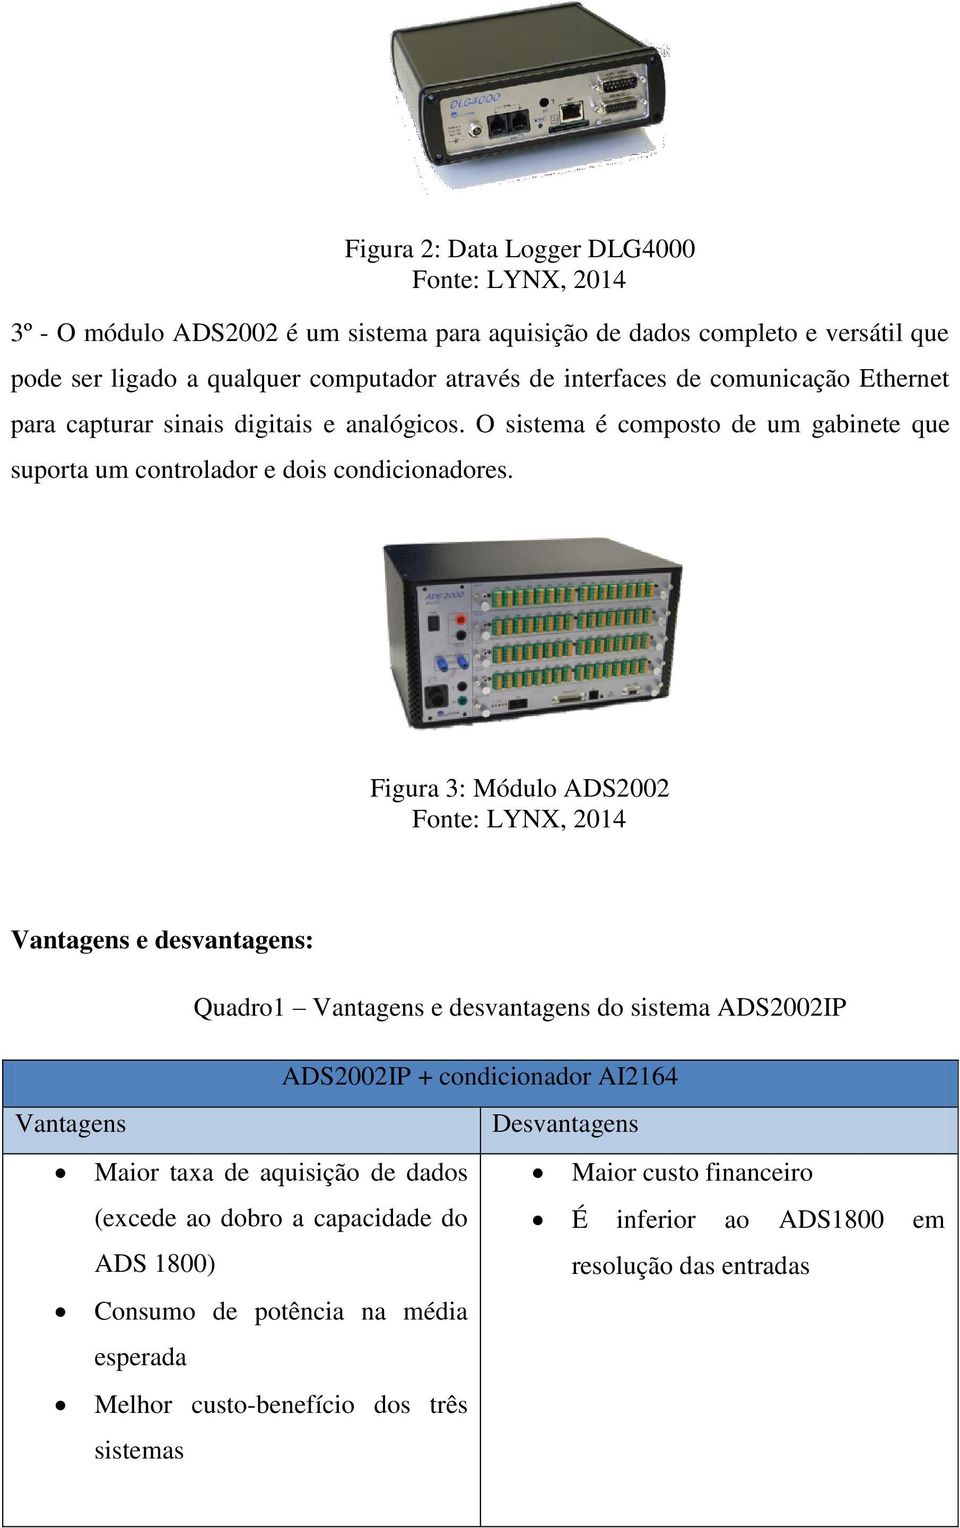 Figura 3: Módulo ADS2002 Fonte: LYNX, 2014 Vantagens e desvantagens: Quadro1 Vantagens e desvantagens do sistema ADS2002IP ADS2002IP + condicionador AI2164 Vantagens Desvantagens Maior